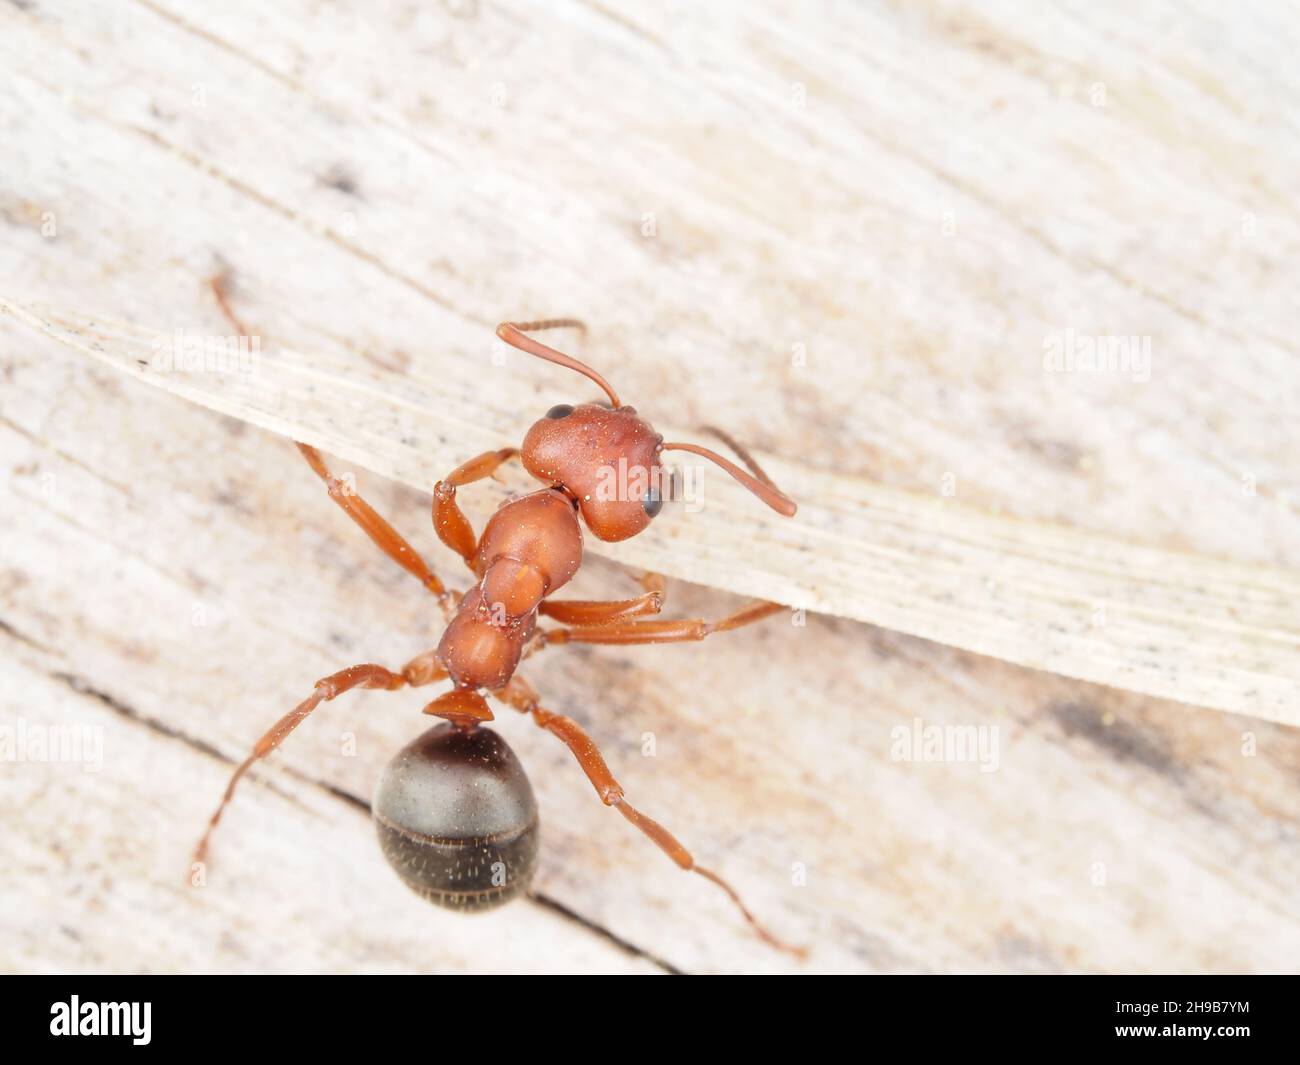 Diminuta hormiga roja-negra, probablemente Formica aserva, en Oregon USA Foto de stock